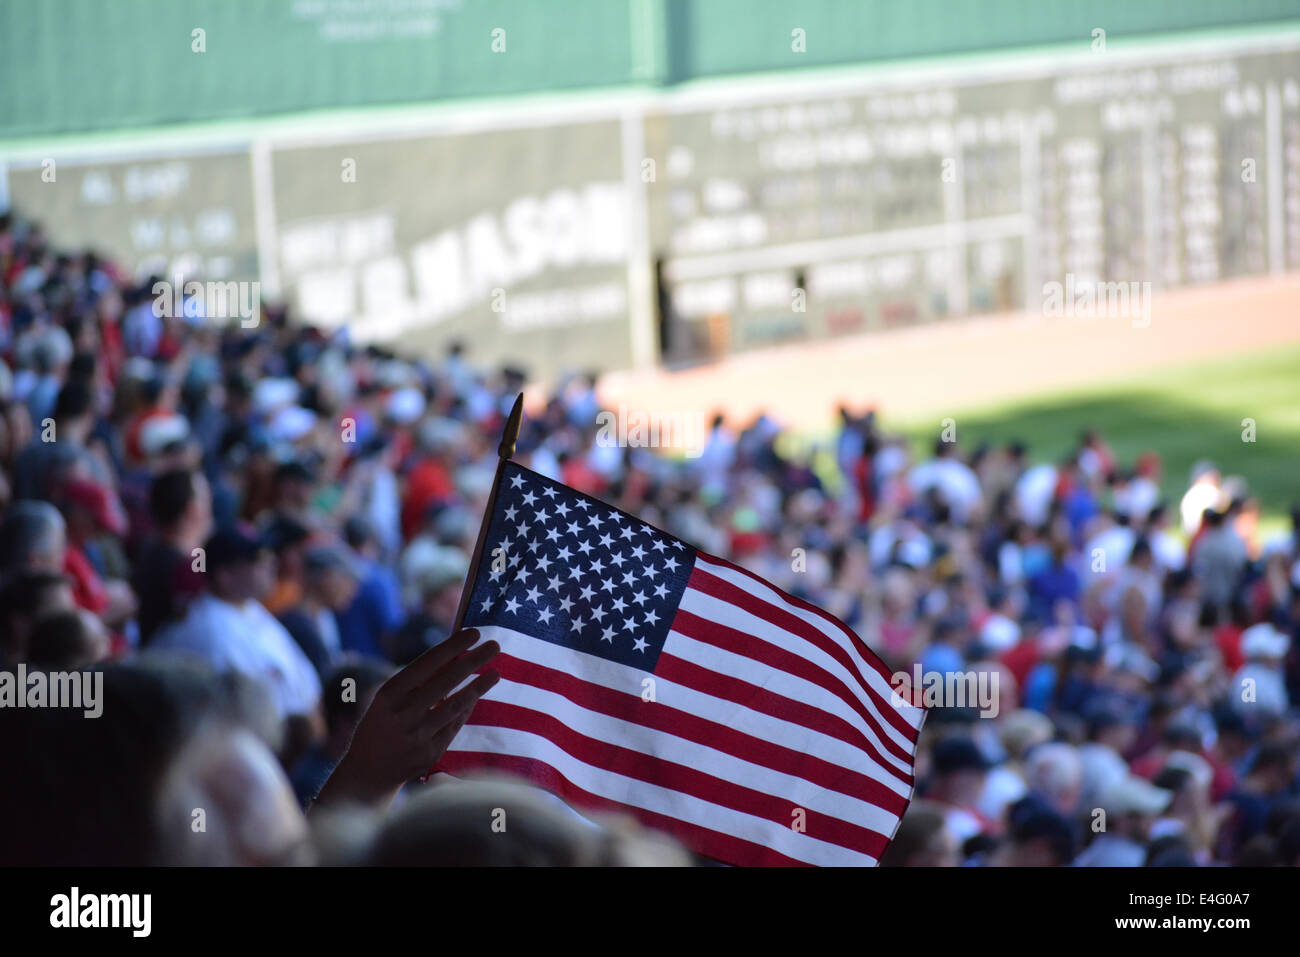 Brandissant un drapeau du ventilateur pendant un match des Red Sox de Boston au Fenway Park. Banque D'Images